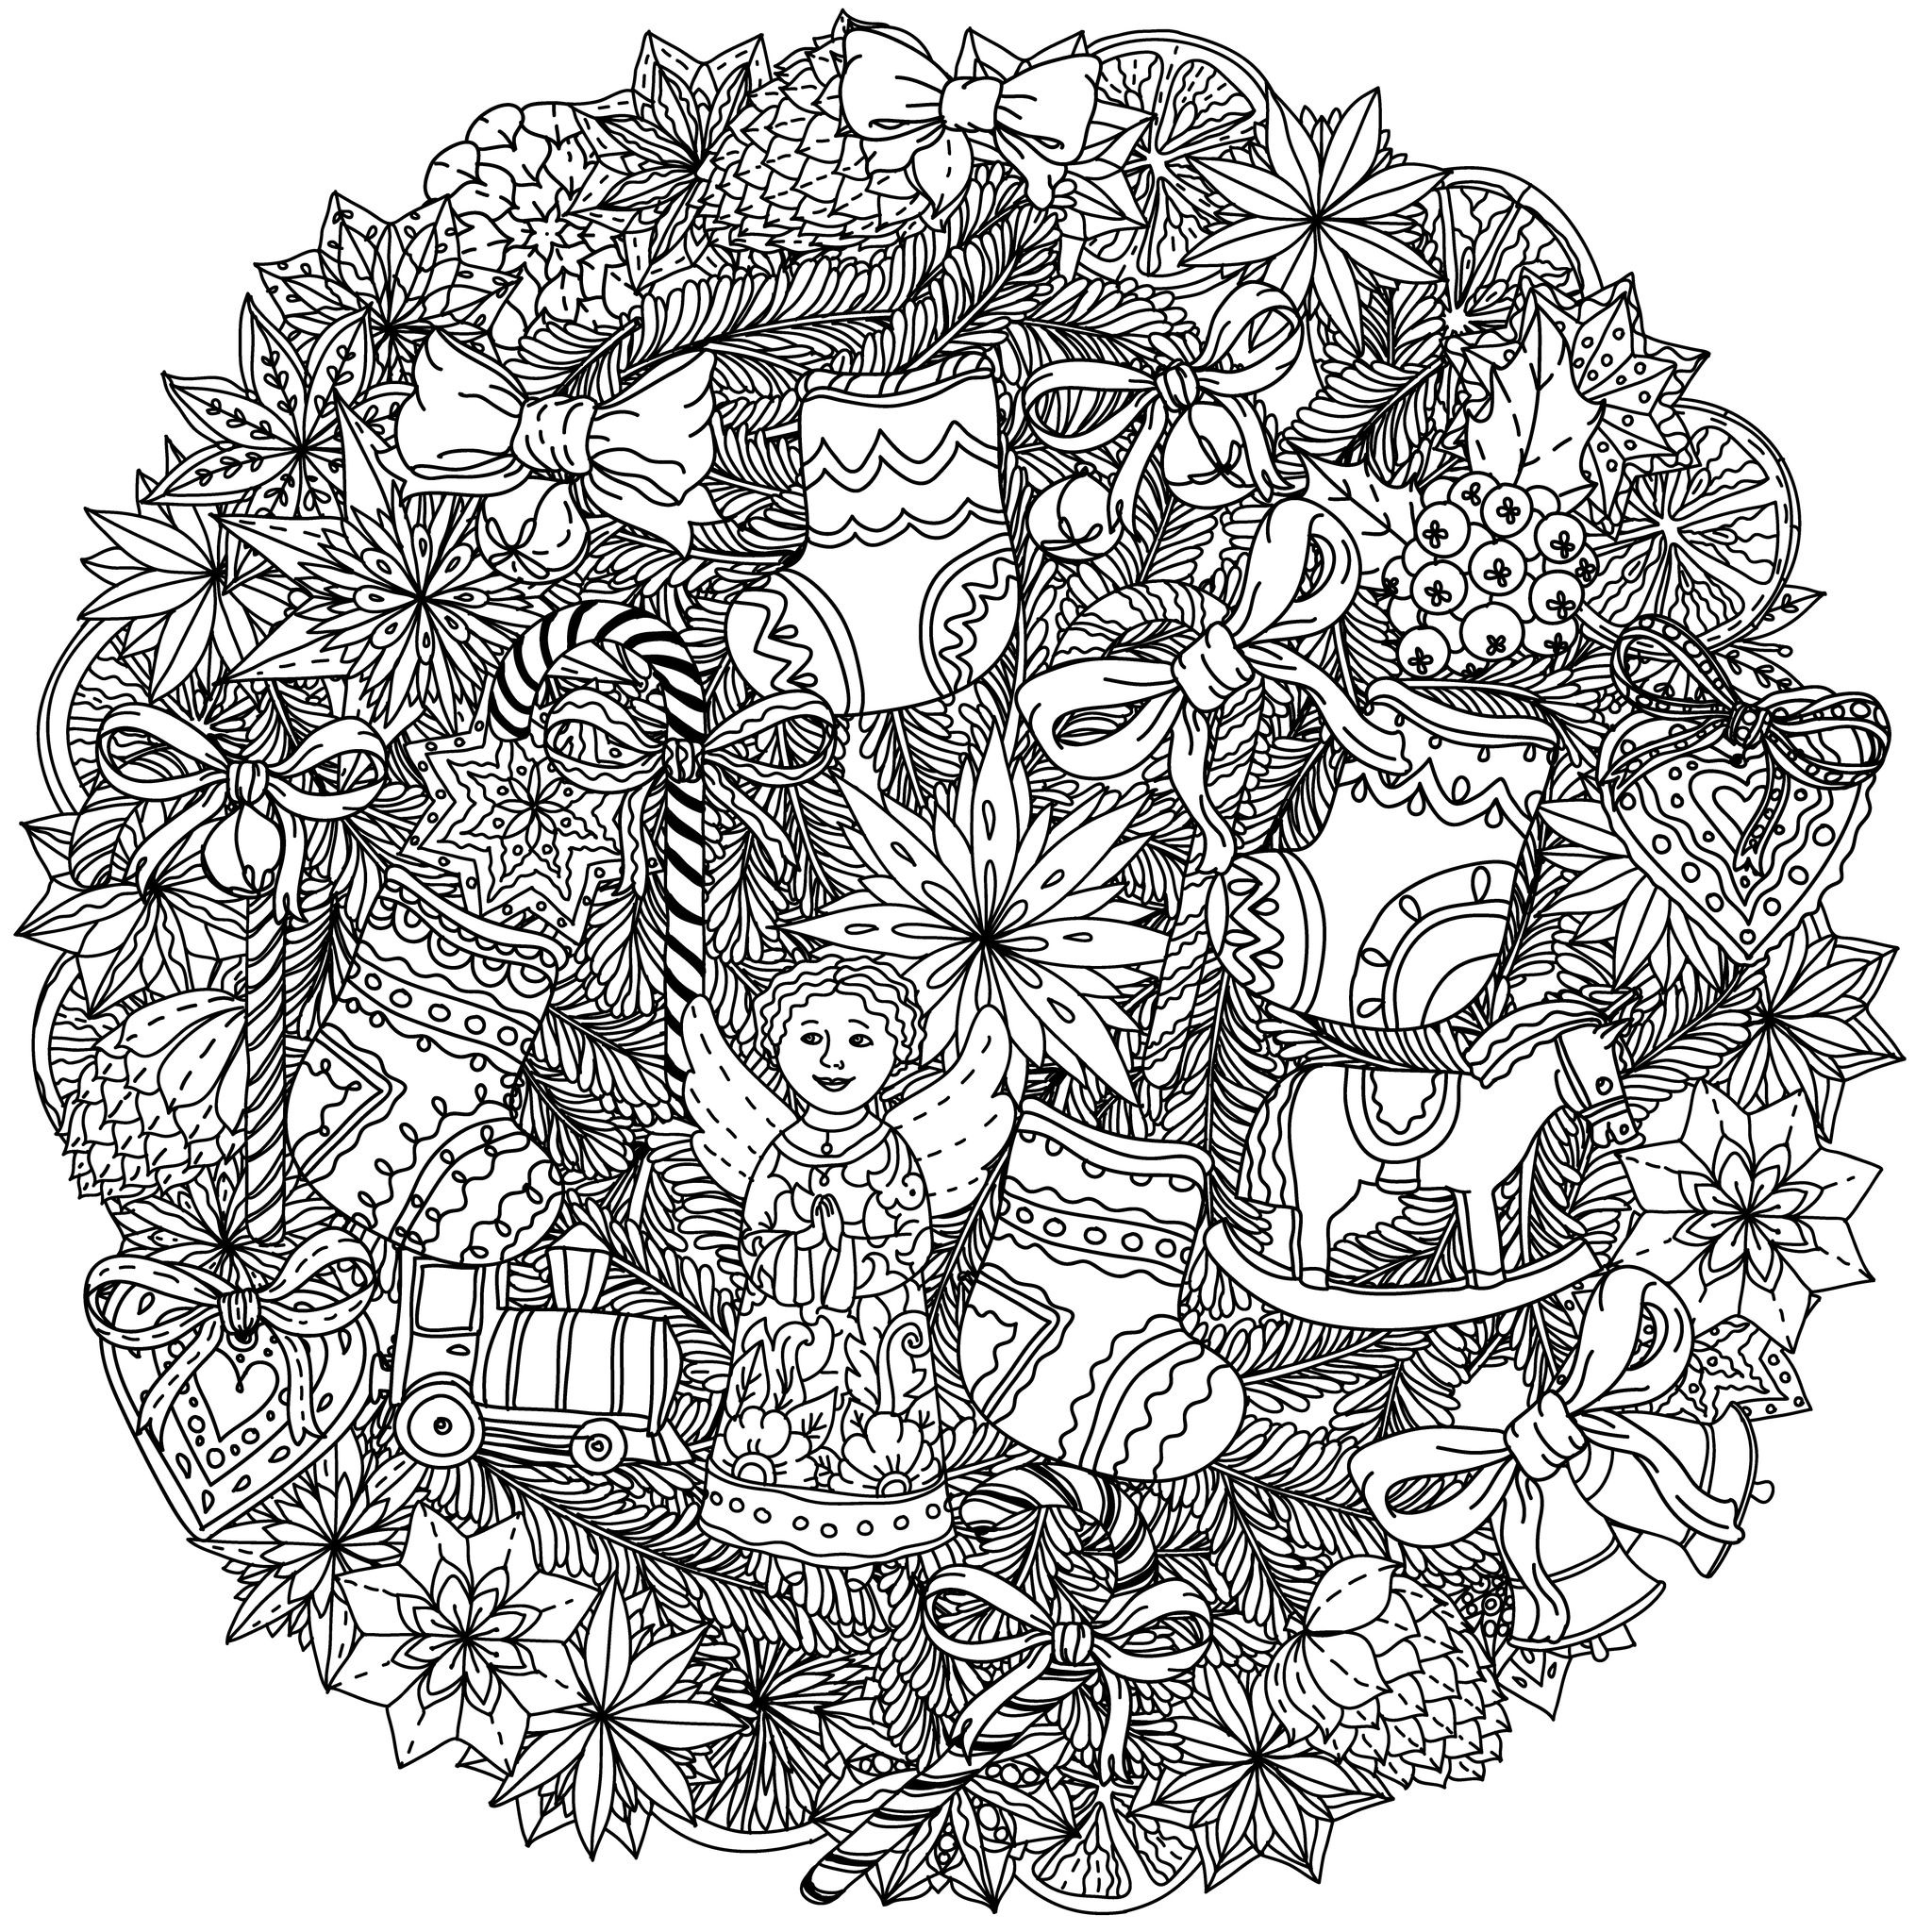 49525227 - corona de navidad con elementos decorativos, blanco y negro . lo mejor para su diseño, textiles, carteles, libro para colorear